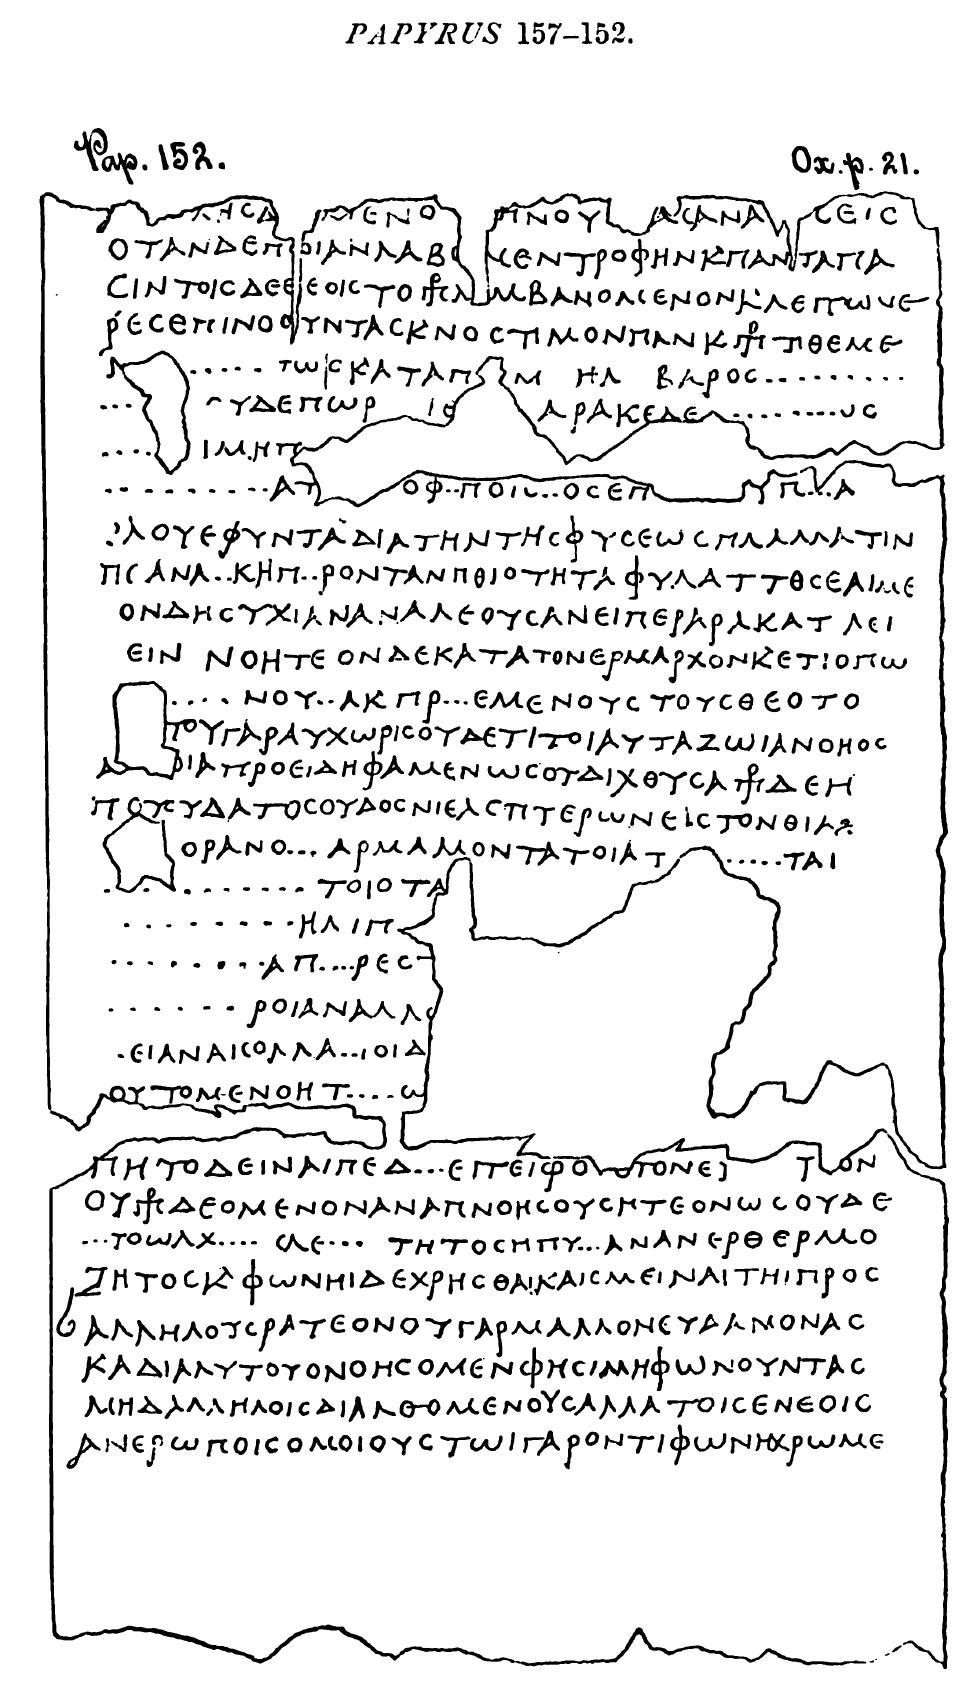 ຂໍ້ຄວາມຂອງ Herculaneum papyri ຈາກຕົວເລກ 152 ຫາ 157 ຖືກຖອດລະຫັດແລ້ວ